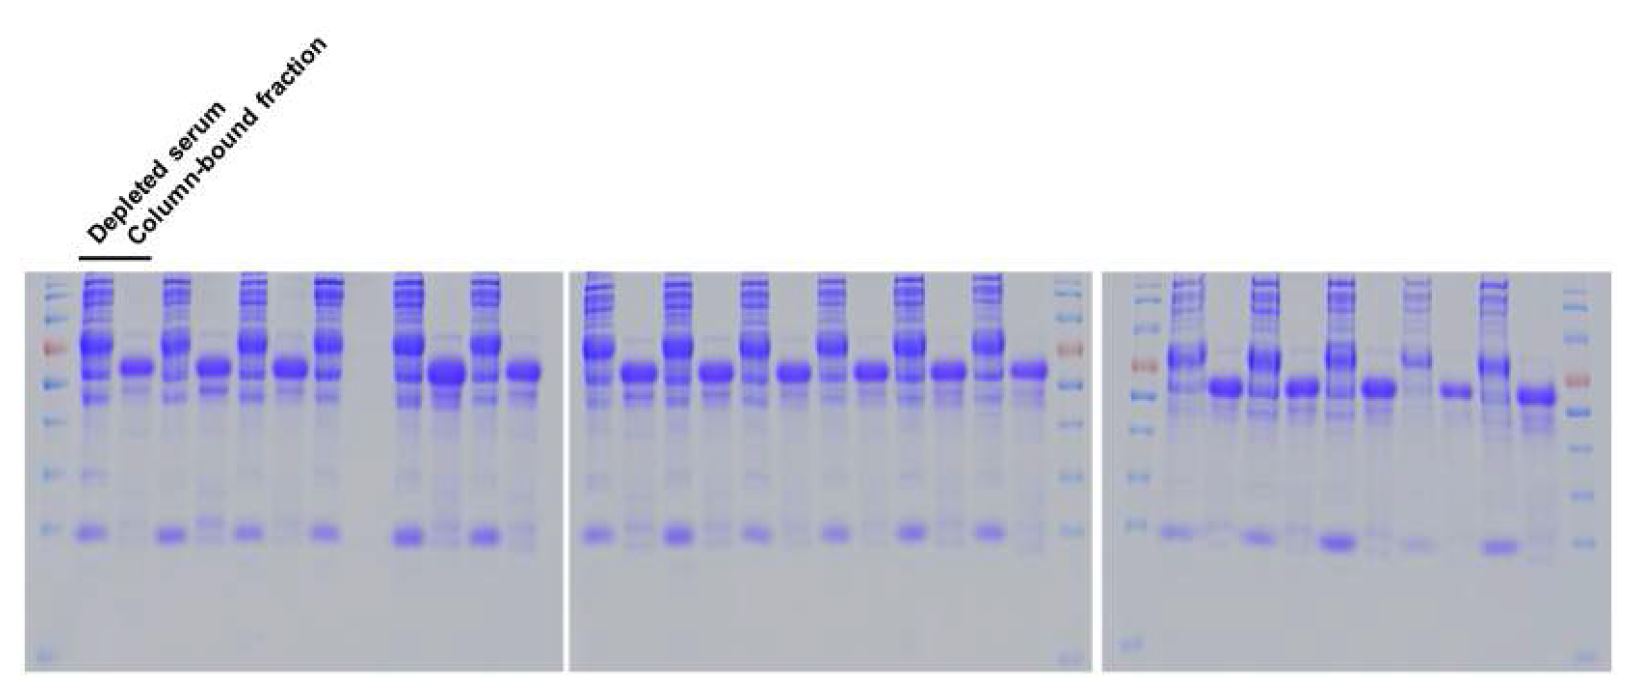 그림 16. depleted column 사용 전후 serum 단백질 비교